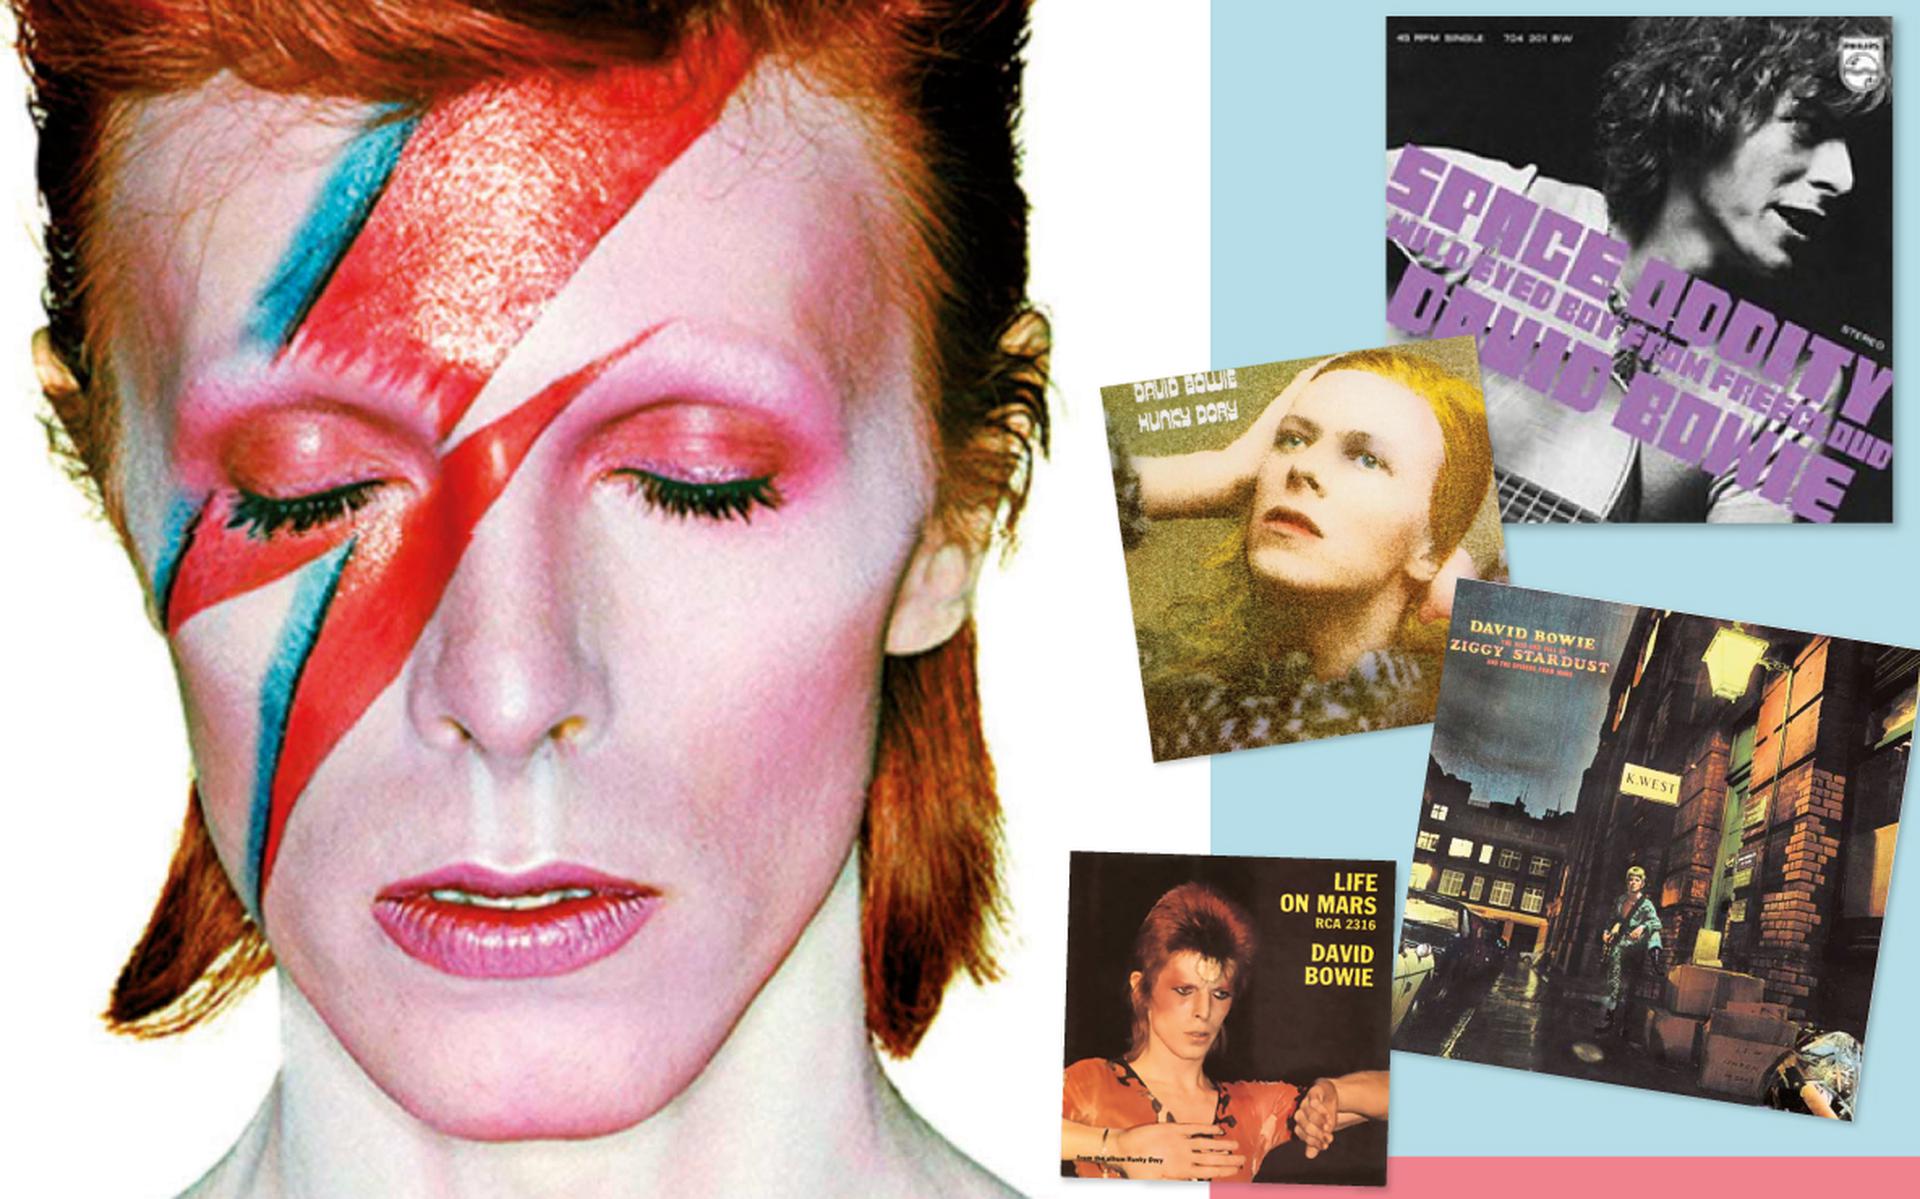 Vijftig Jaar Na Het Uitkomen Van Het Album Over Ziggy Stardust Een Overzicht Van David Bowie En 4913